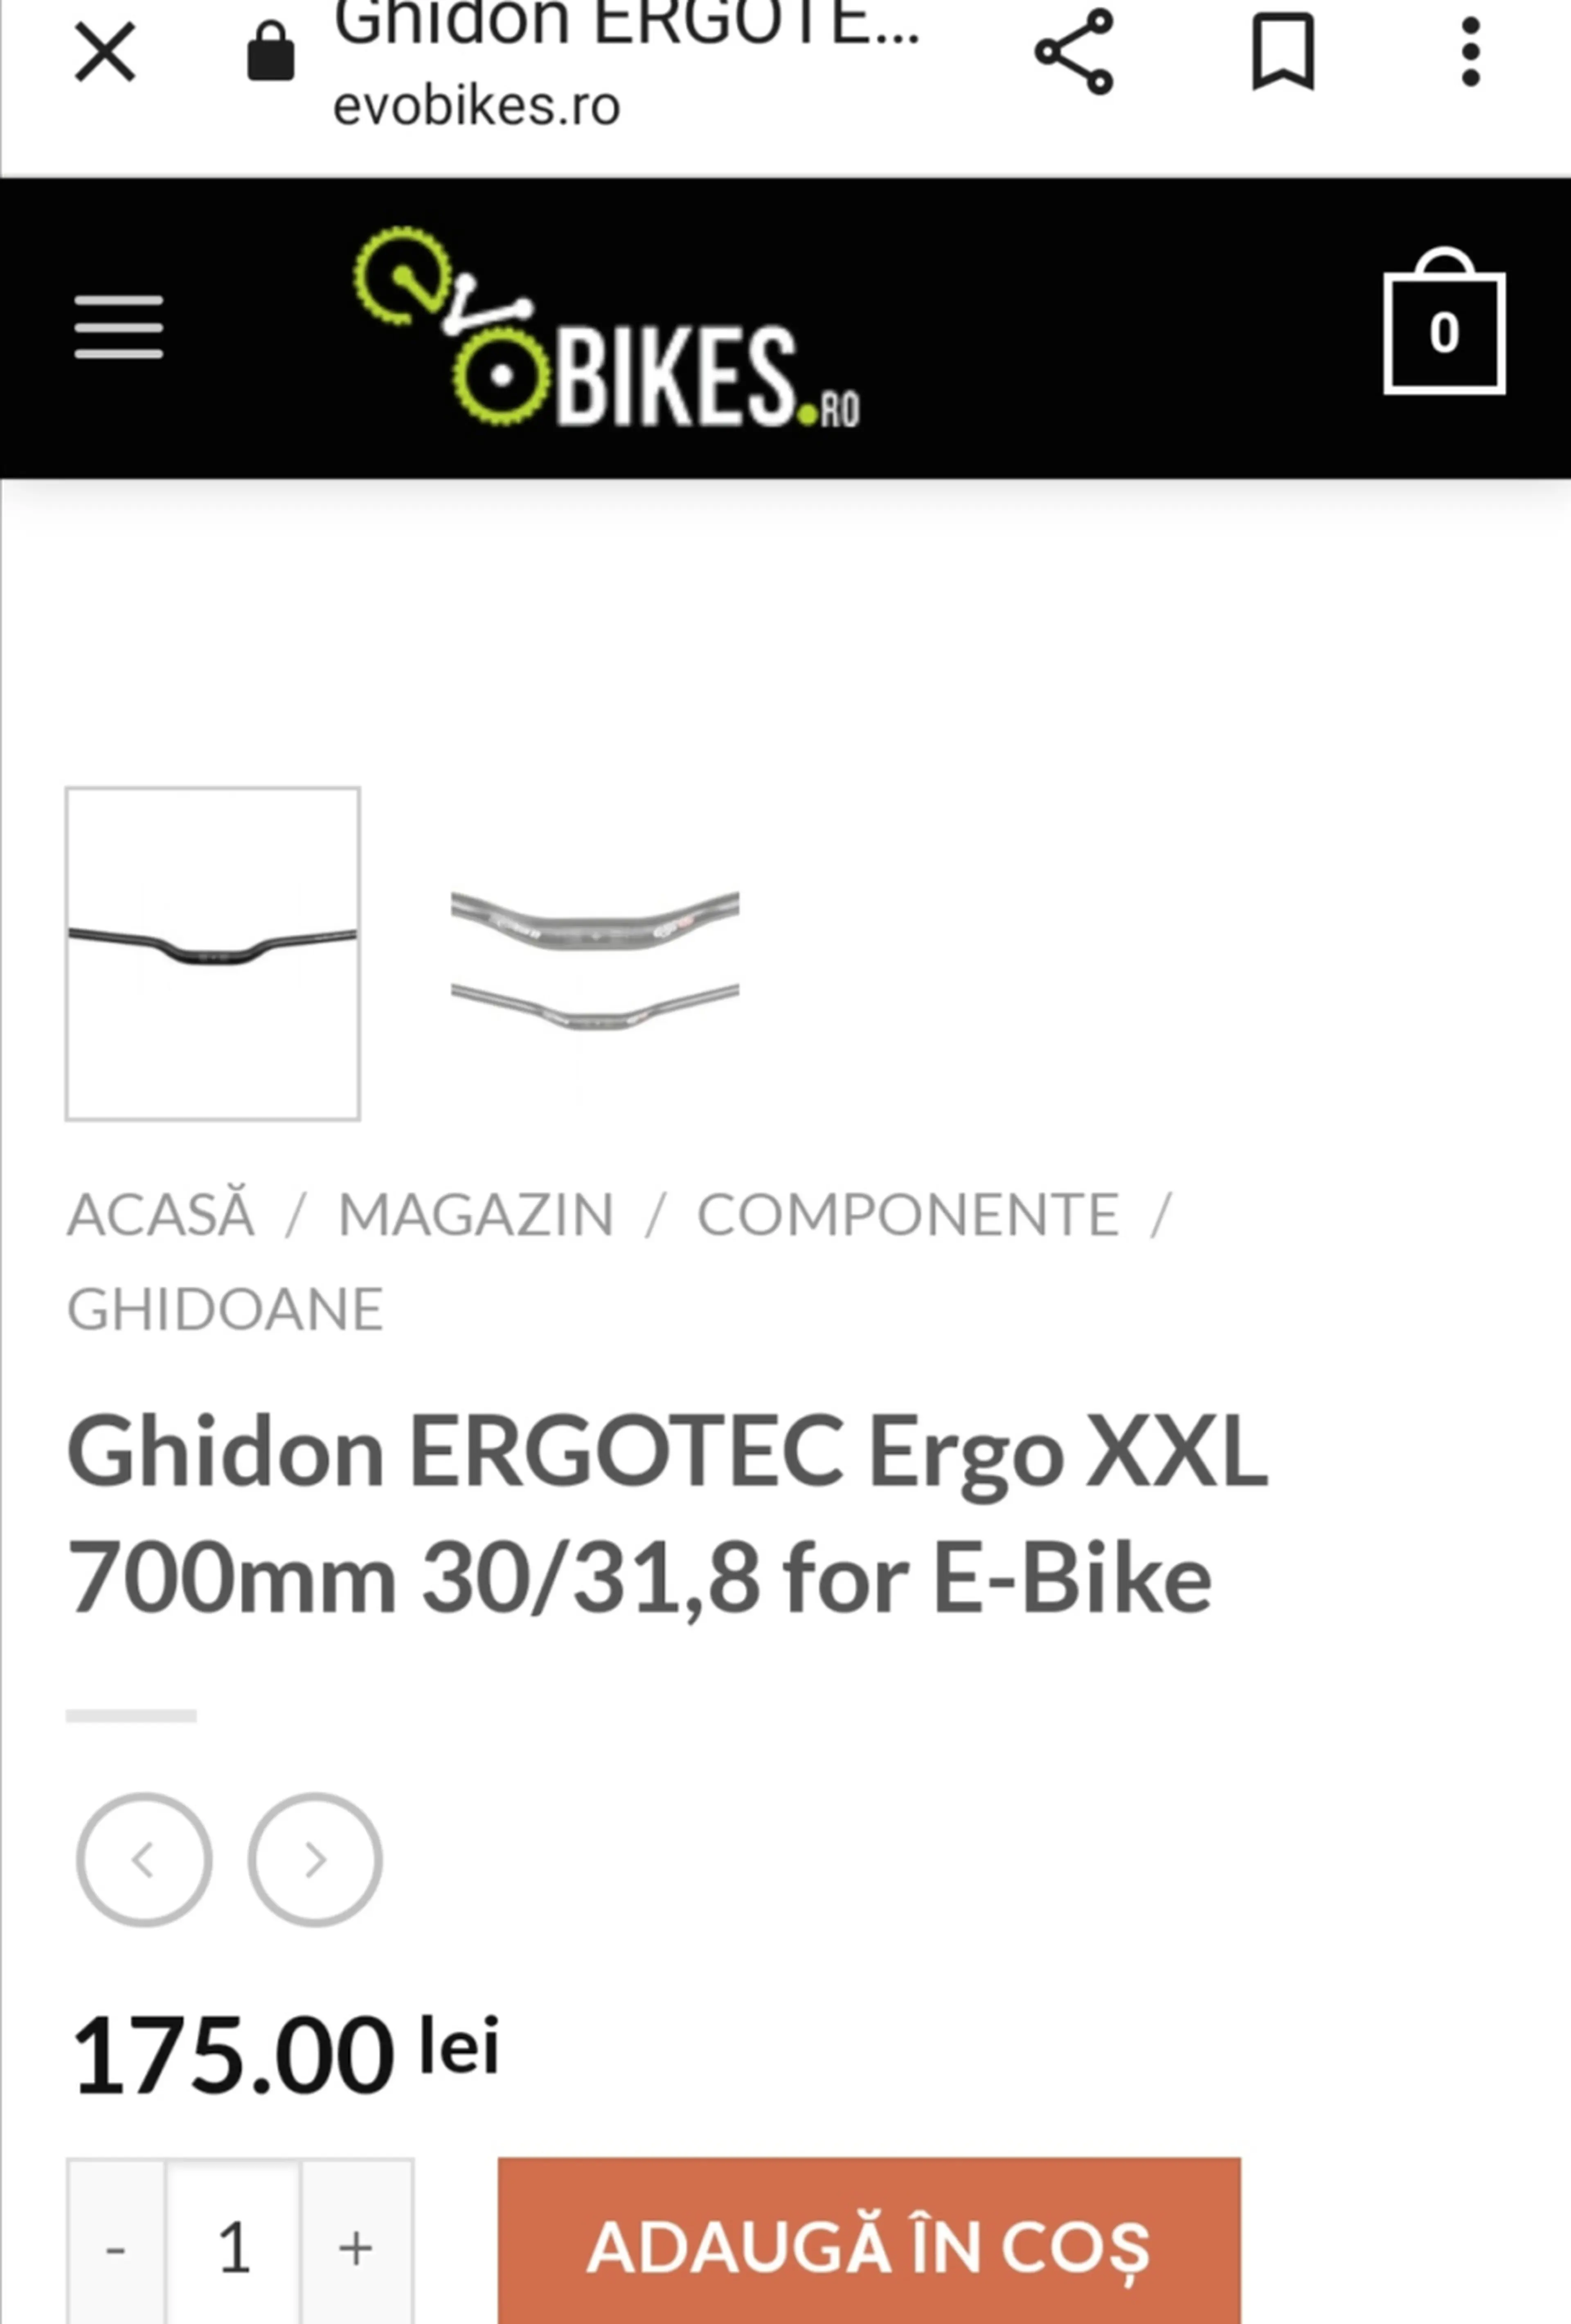 Image E-bike ergotec 700x31,8